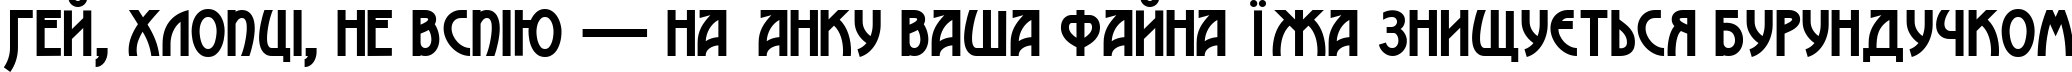 Пример написания шрифтом Advokat Modern текста на украинском